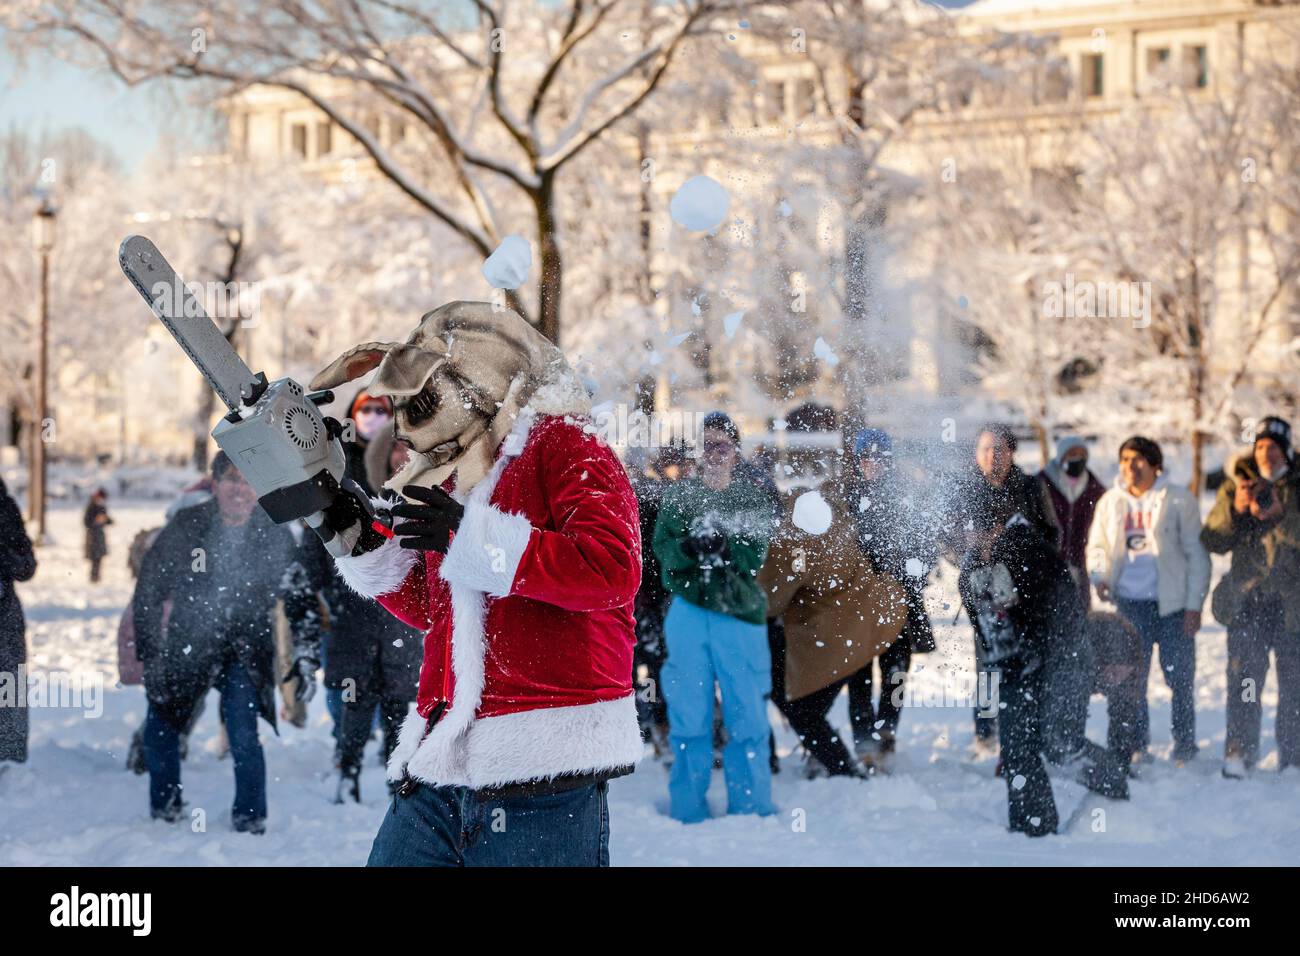 Washington, DC, EE.UU., 3 de enero de 2022. En la foto: Un hombre vestido como Bunnyman en un Santa coat struts con su motosierra entre los grupos se alinearon para una gran lucha de bola de nieve en el National Mall. La lucha ocurrió después de una inesperada tormenta de nieve arrojó aproximadamente 8 pulgadas sobre la nieve en Washington, DC, y fue anunciada por la Asociación de Lucha de Snowball de DC. Crédito: Allison Bailey / Alamy Live News Foto de stock